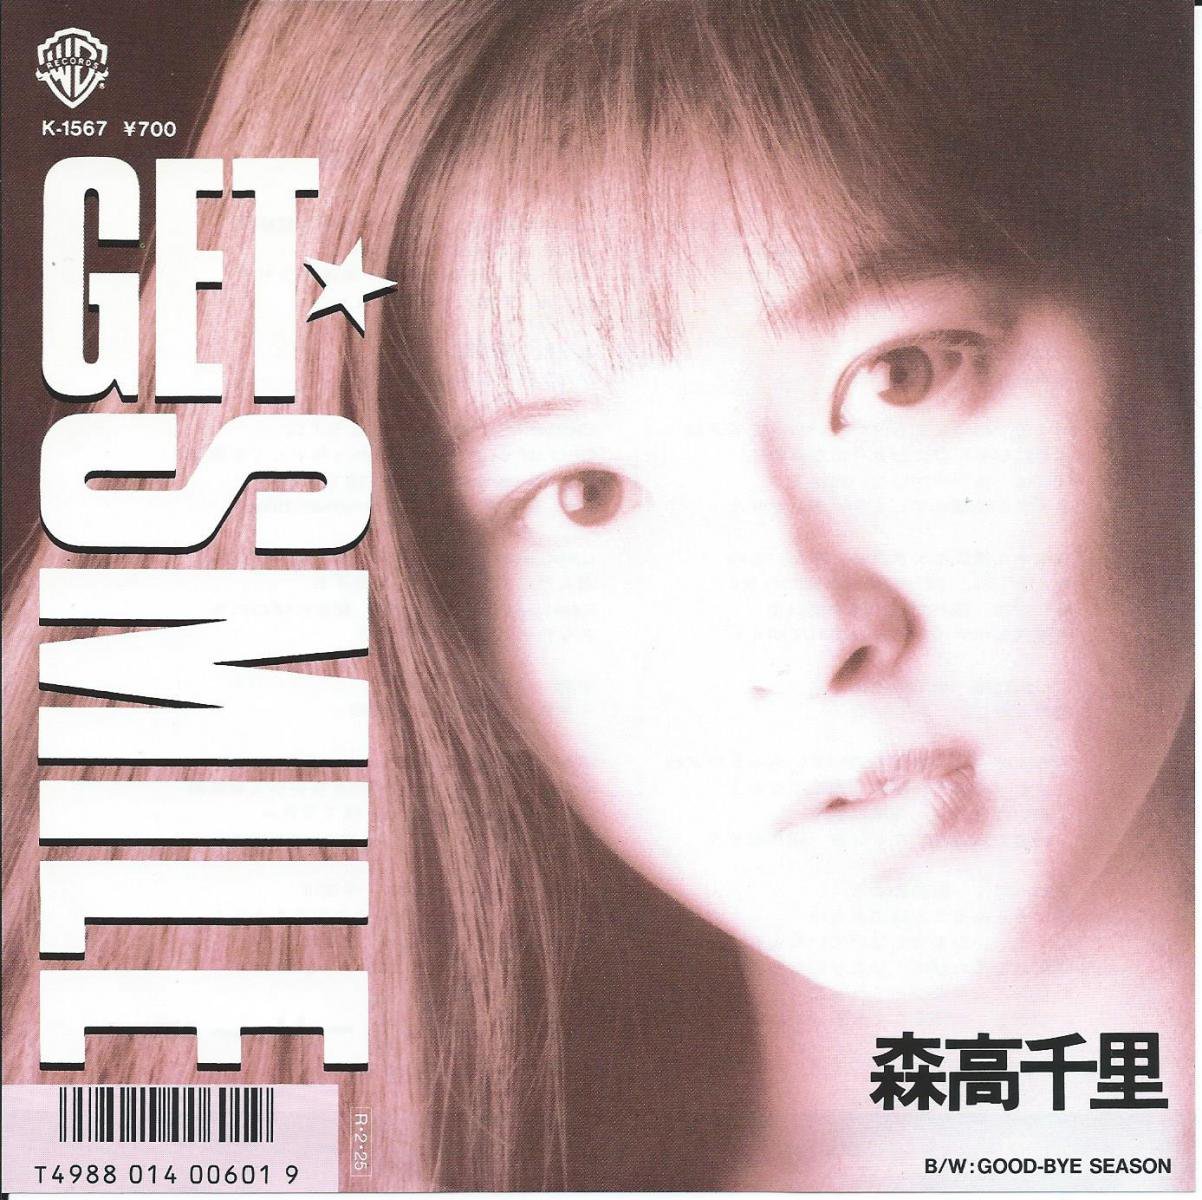 森高千里 CHISATO MORITAKA / GET SMILE / GOOD-BYE SEASON (7